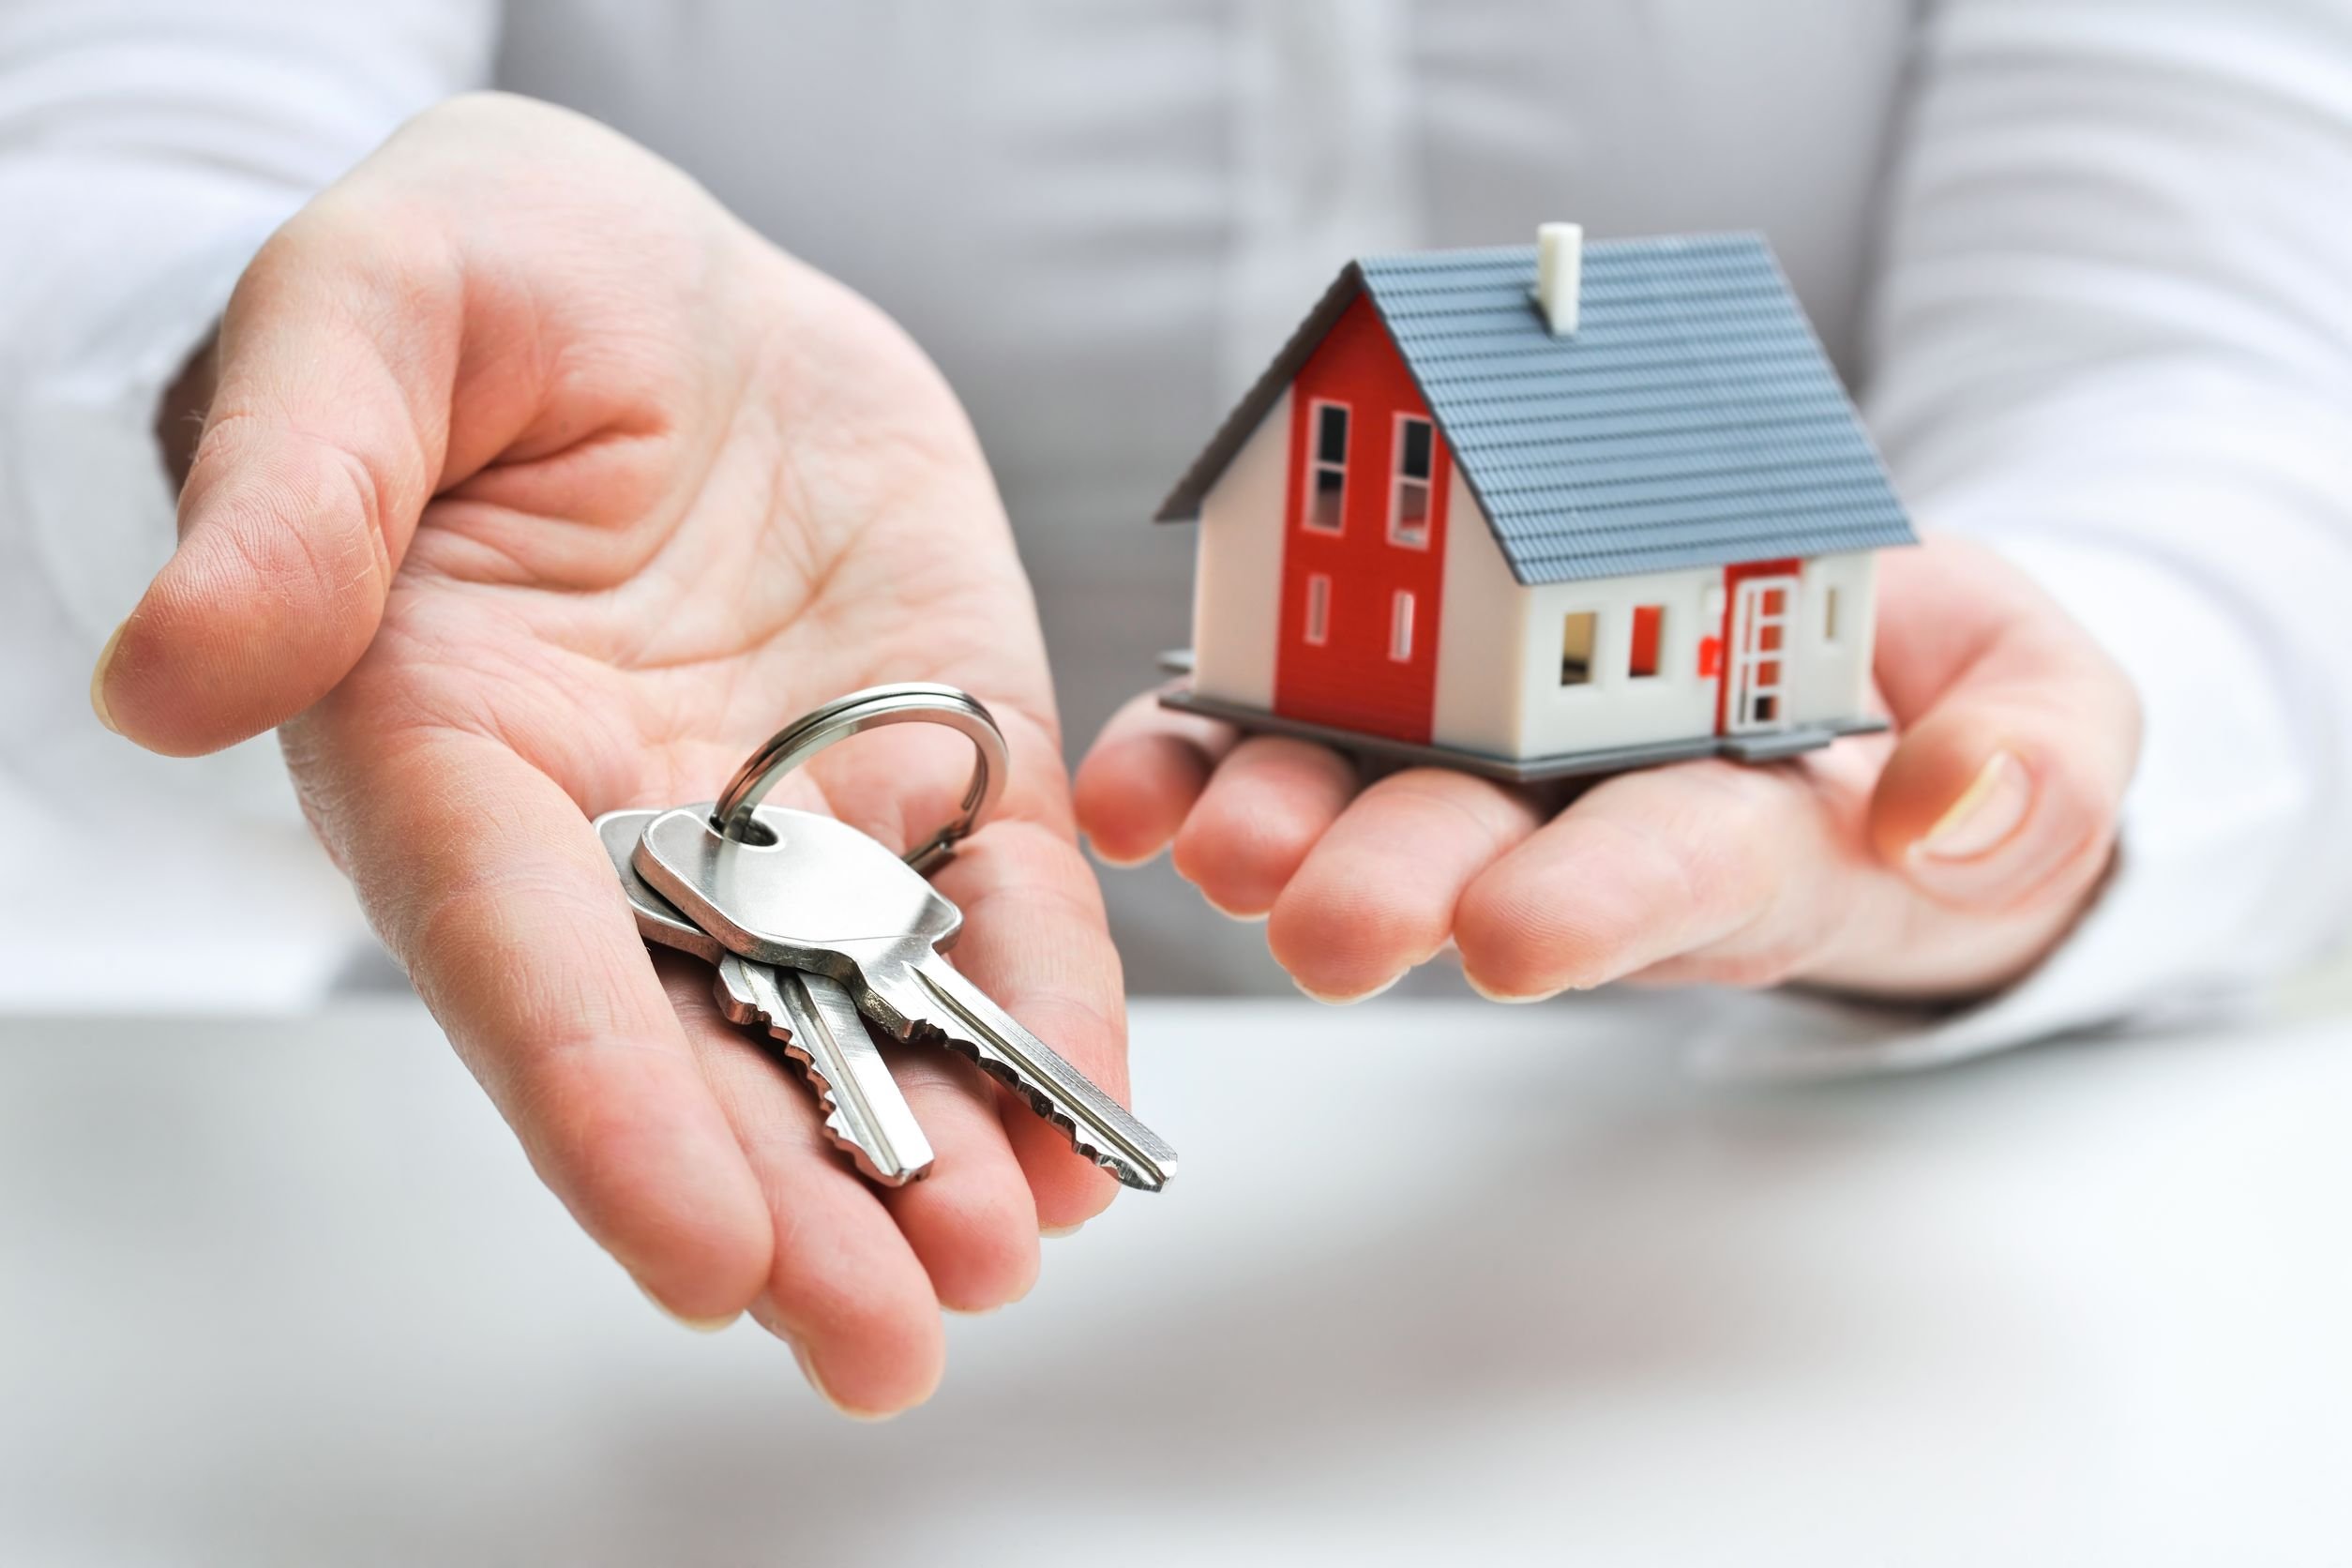 “Comportamento scorretto da alcune agenzie immobiliari”: le segnalazioni all’Adoc e Uniat